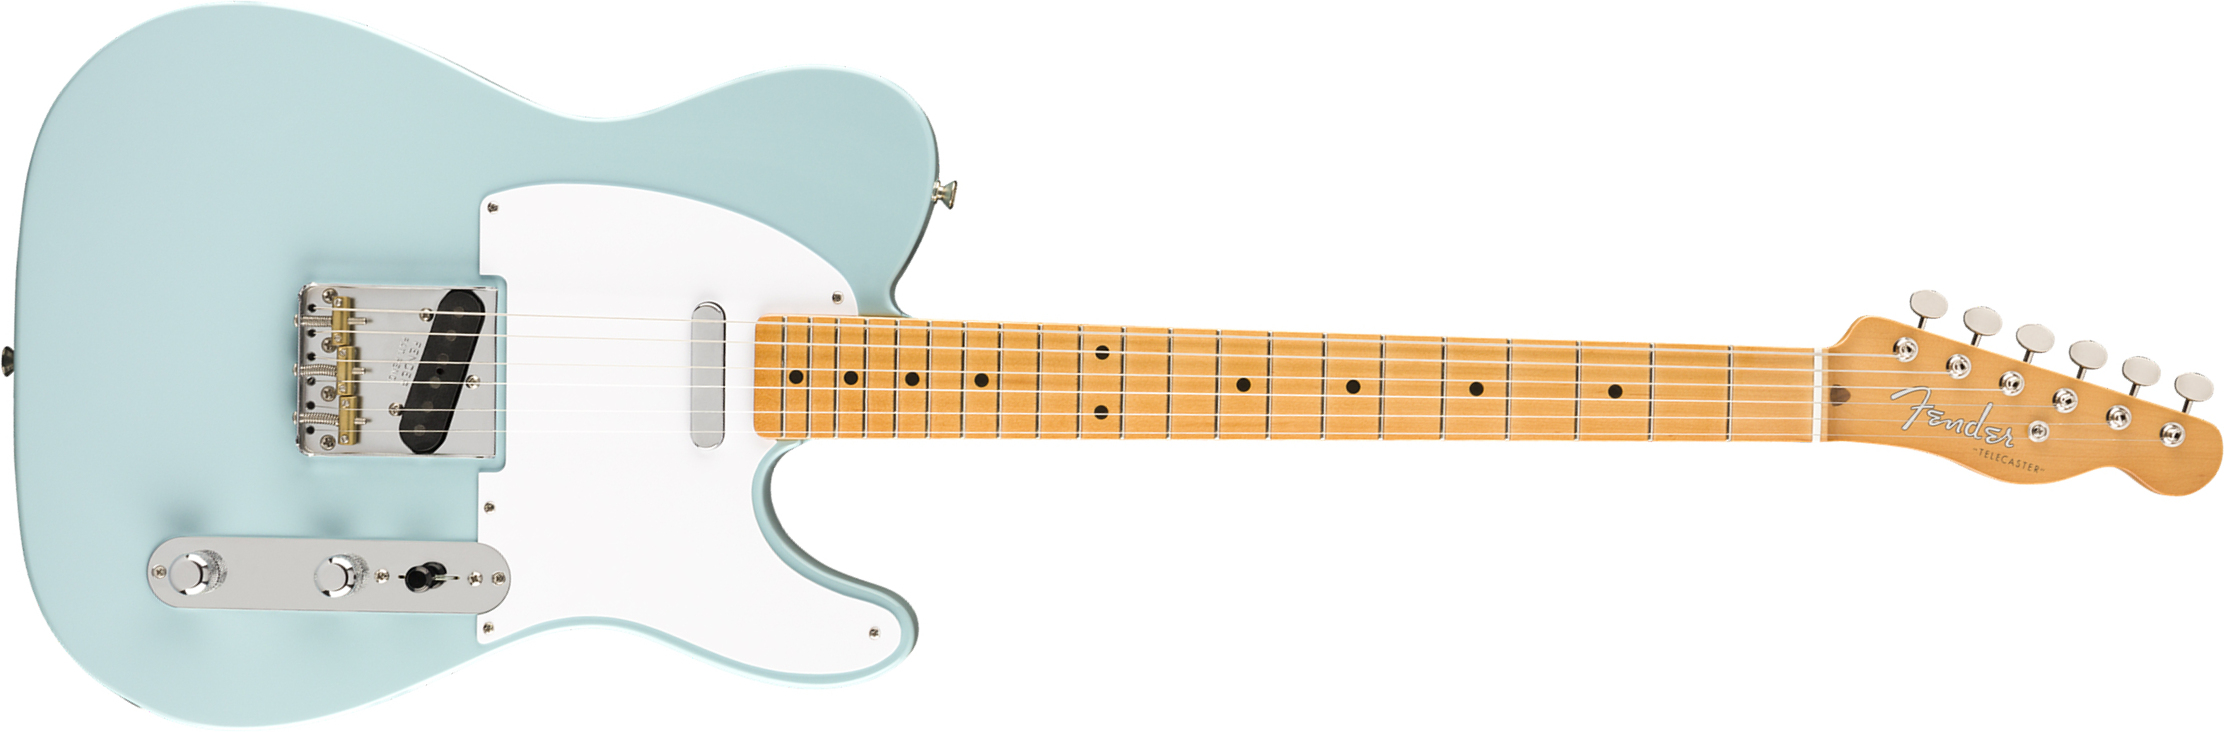 Fender Tele 50s Vintera Vintage Mex Mn - Sonic Blue - Tel shape electric guitar - Main picture